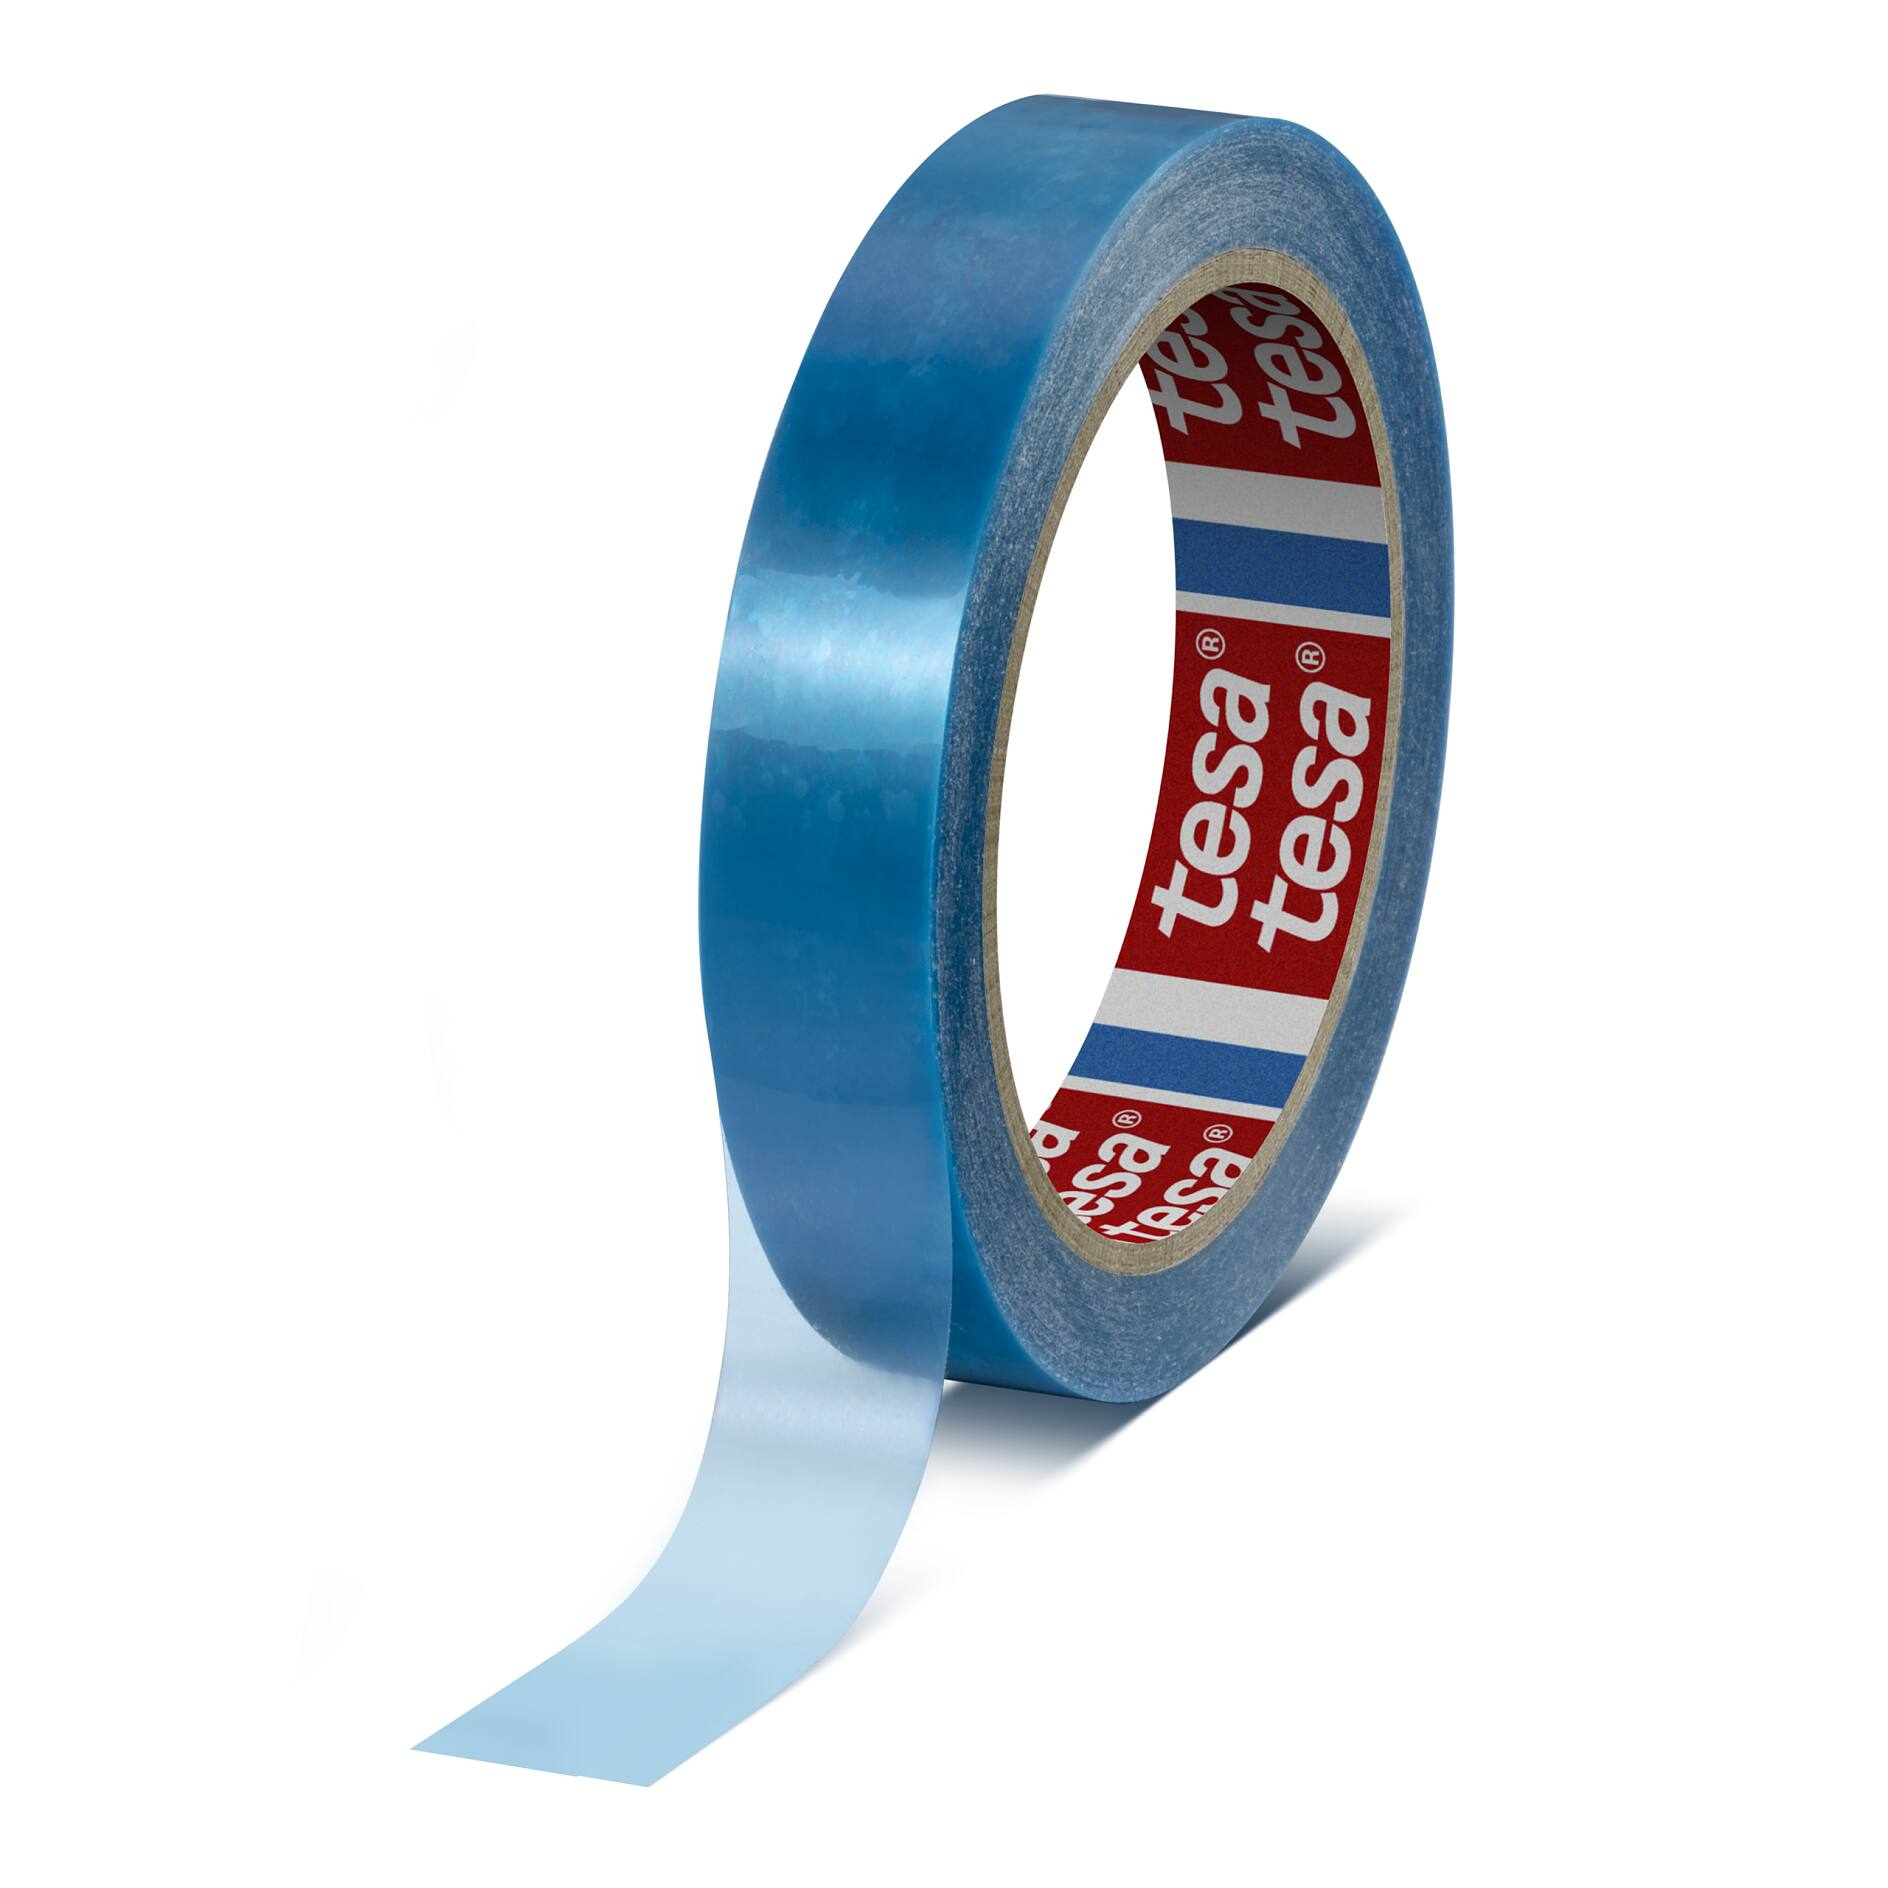 Tesa 64284 Ruban adhésif de cerclage en PP Mono orienté - Bleu - sans traces  - 38 mm x 66 m x 0,11 m m - par carton de 48 rouleaux